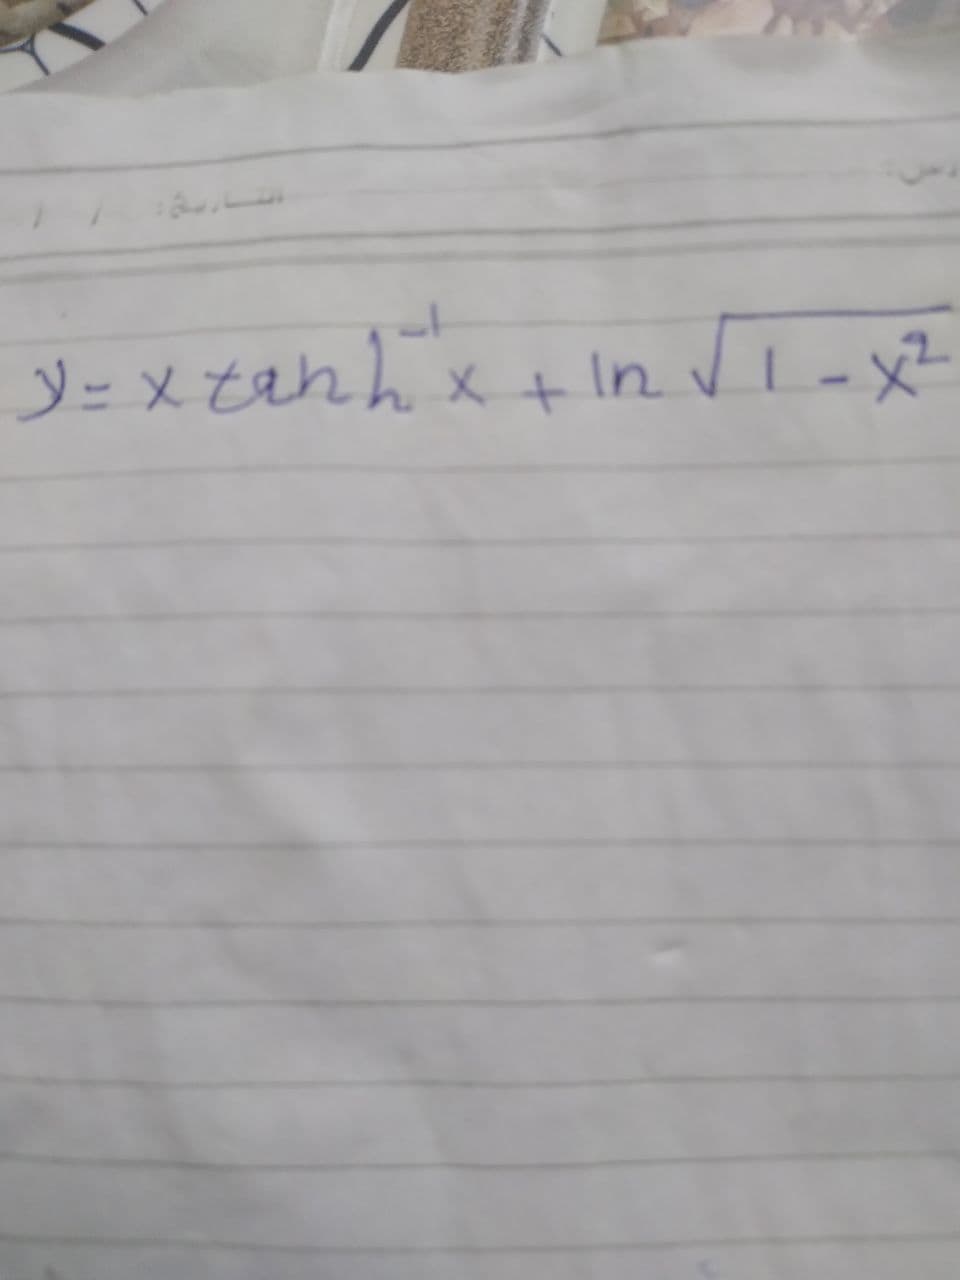 ソ=メでれん、x+ In V
-x²
